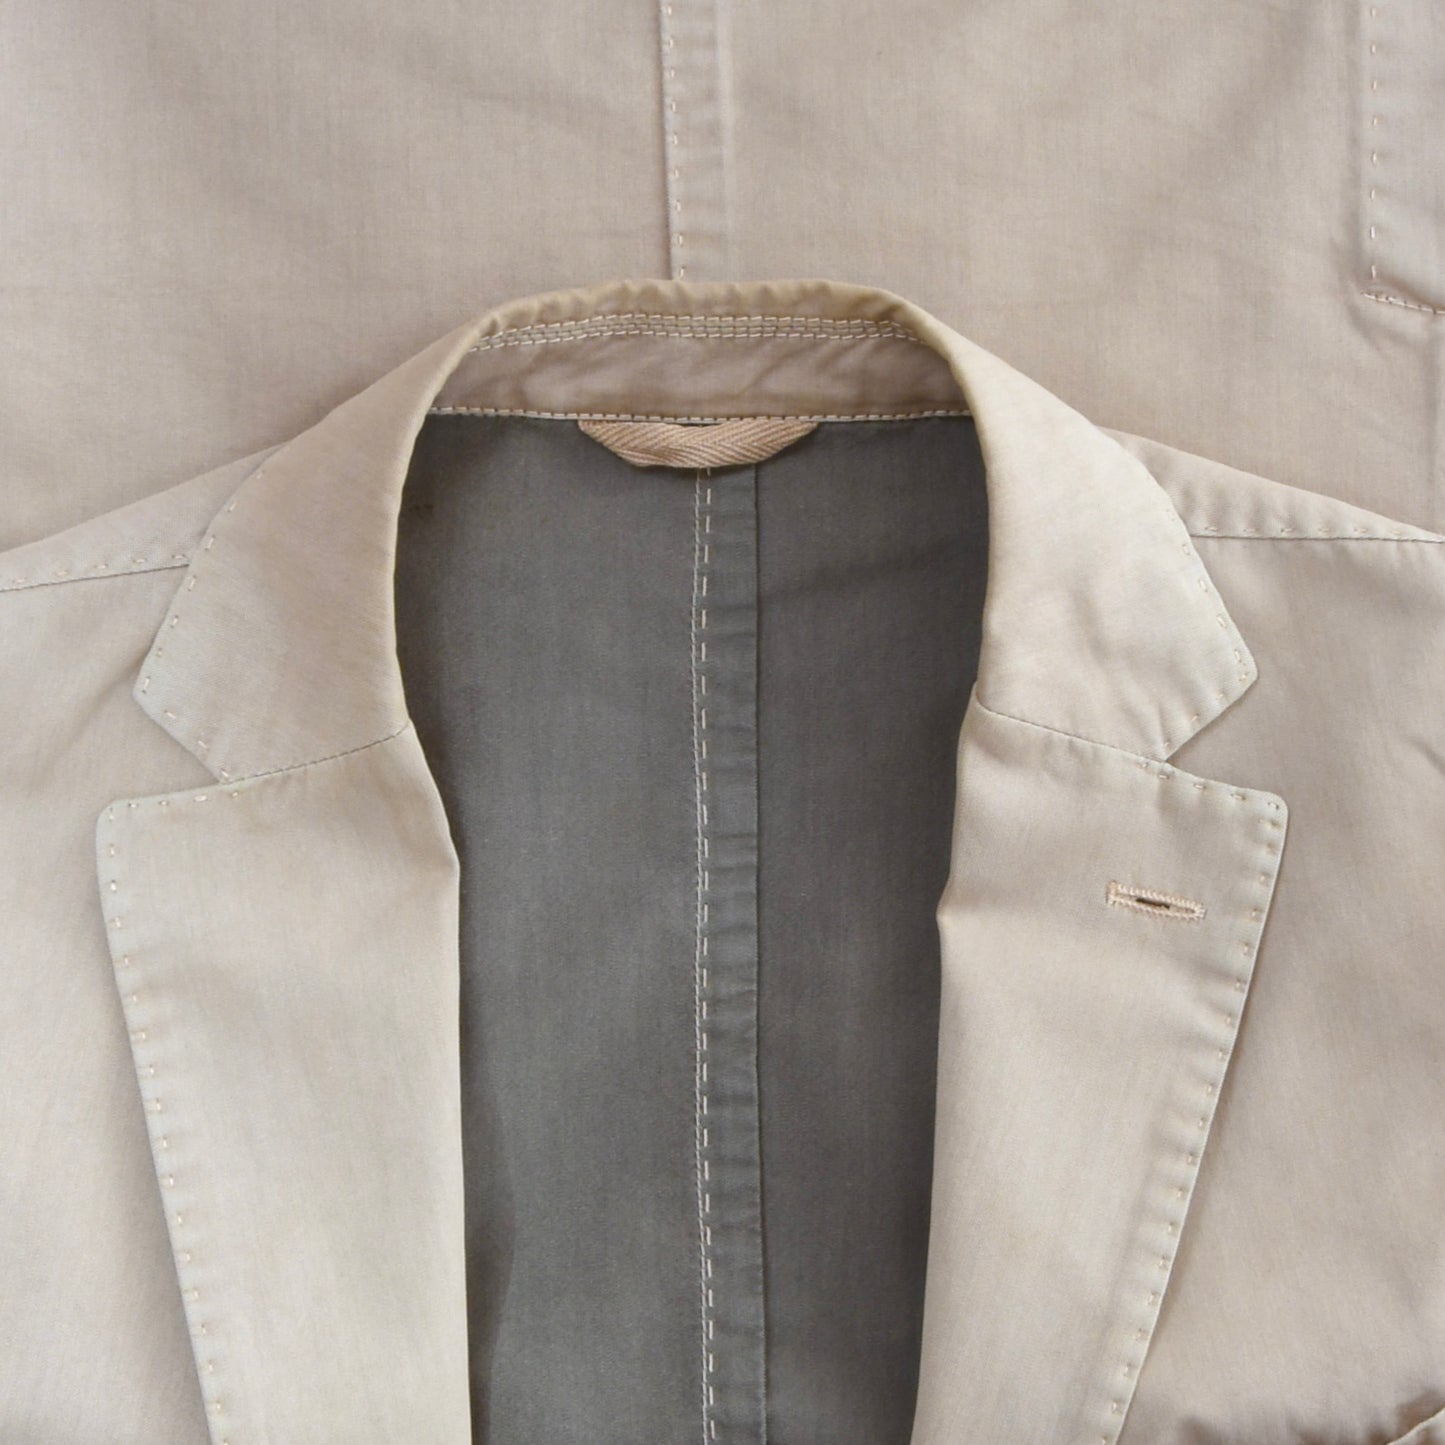 L.B.M. 1911 Cotton Jacket Chest ca. 51cm - Tan/Beige